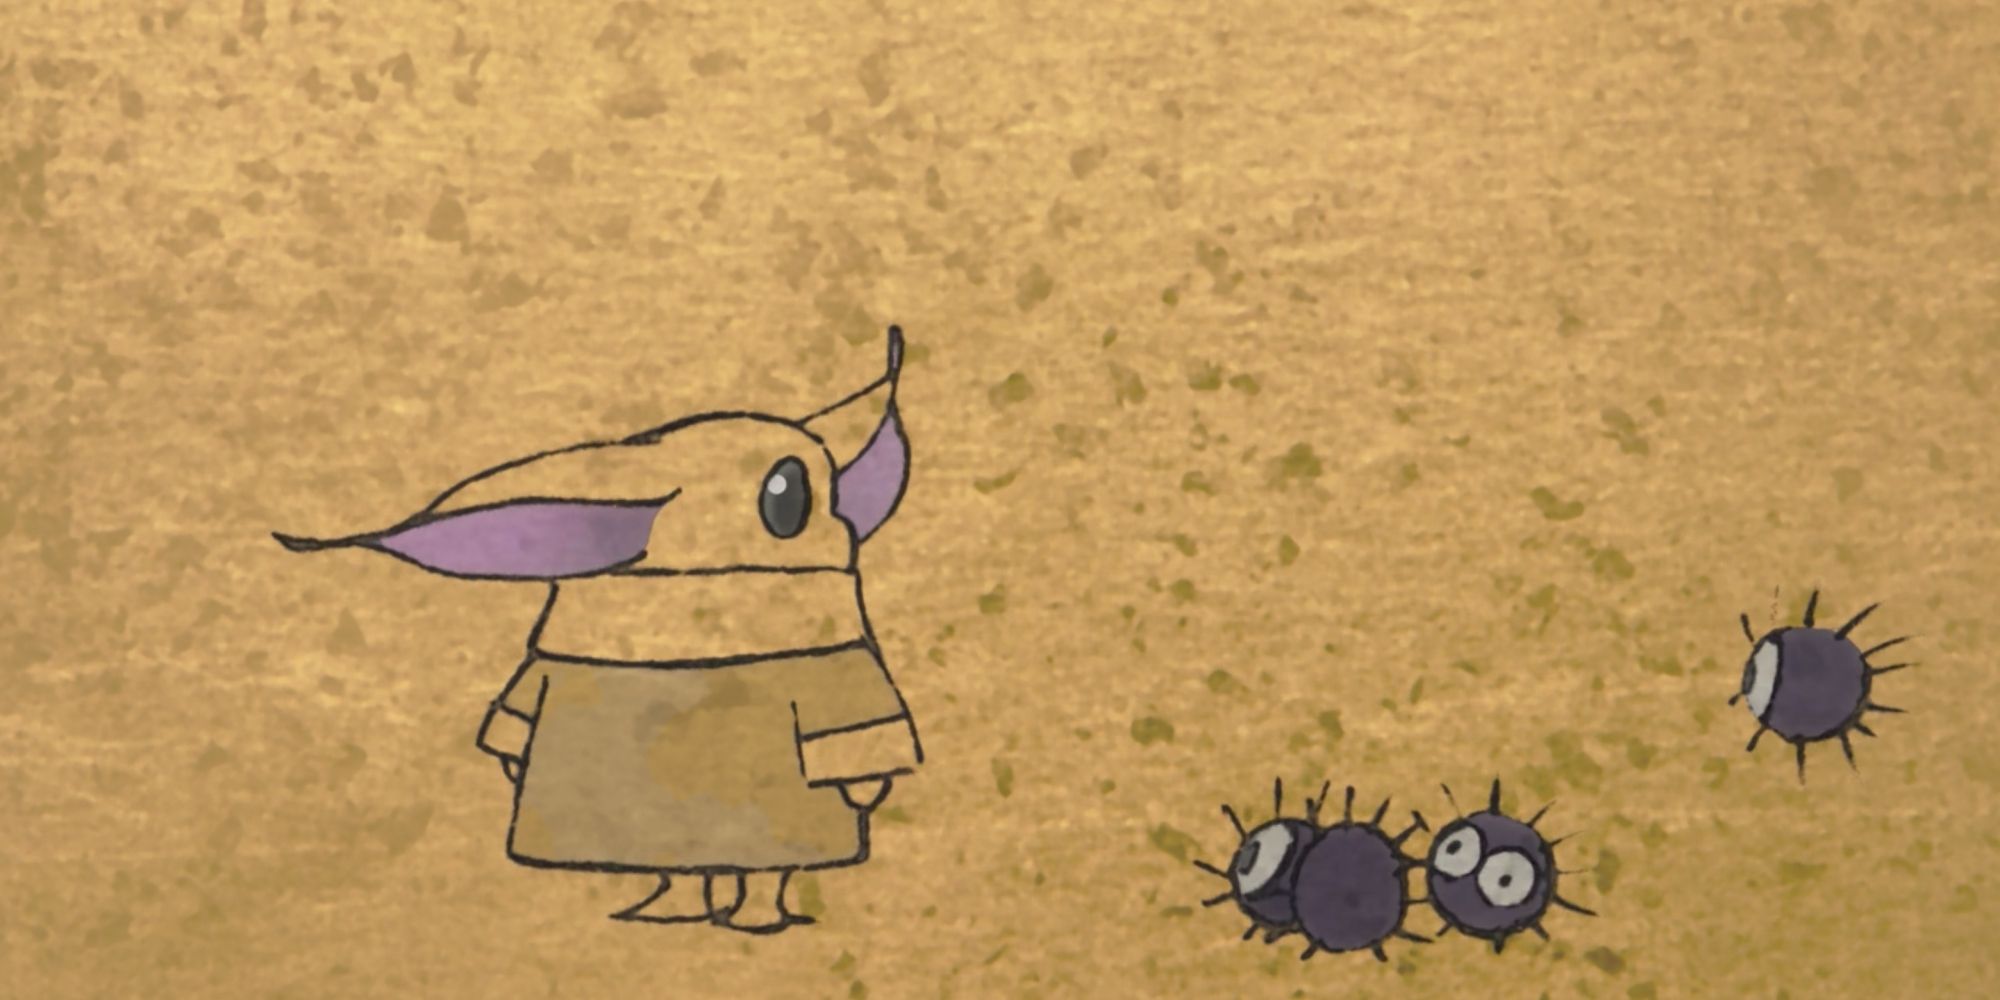 Grogu stops to look back at the dust bunnies in Zen - Grogu and Dust Bunnies.